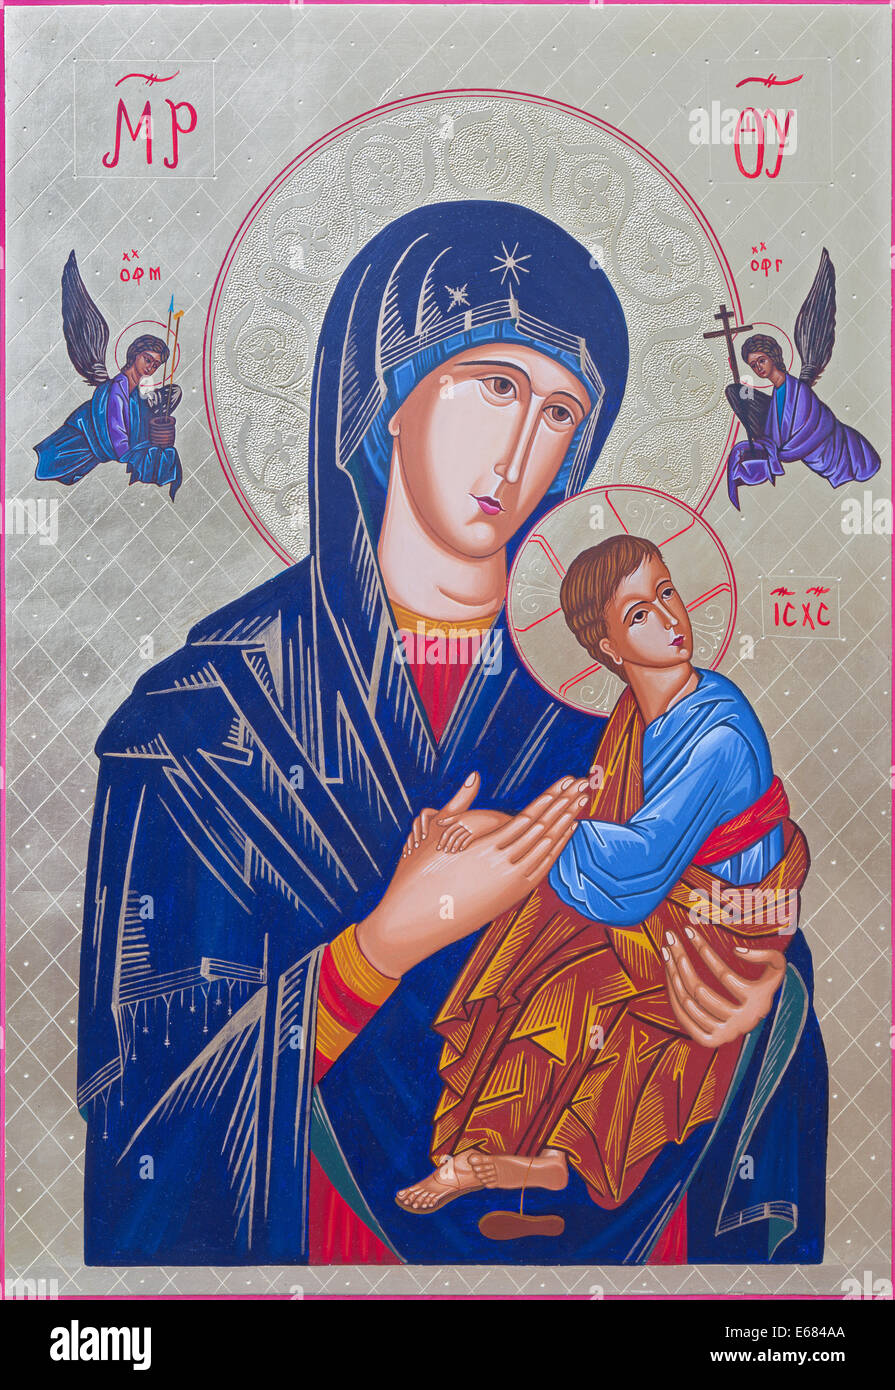 ROZNAVA, Slovacchia - 21 luglio 2014: l'icona della Madonna con il bambino di Pietro Nedoroscik 2004. Foto Stock